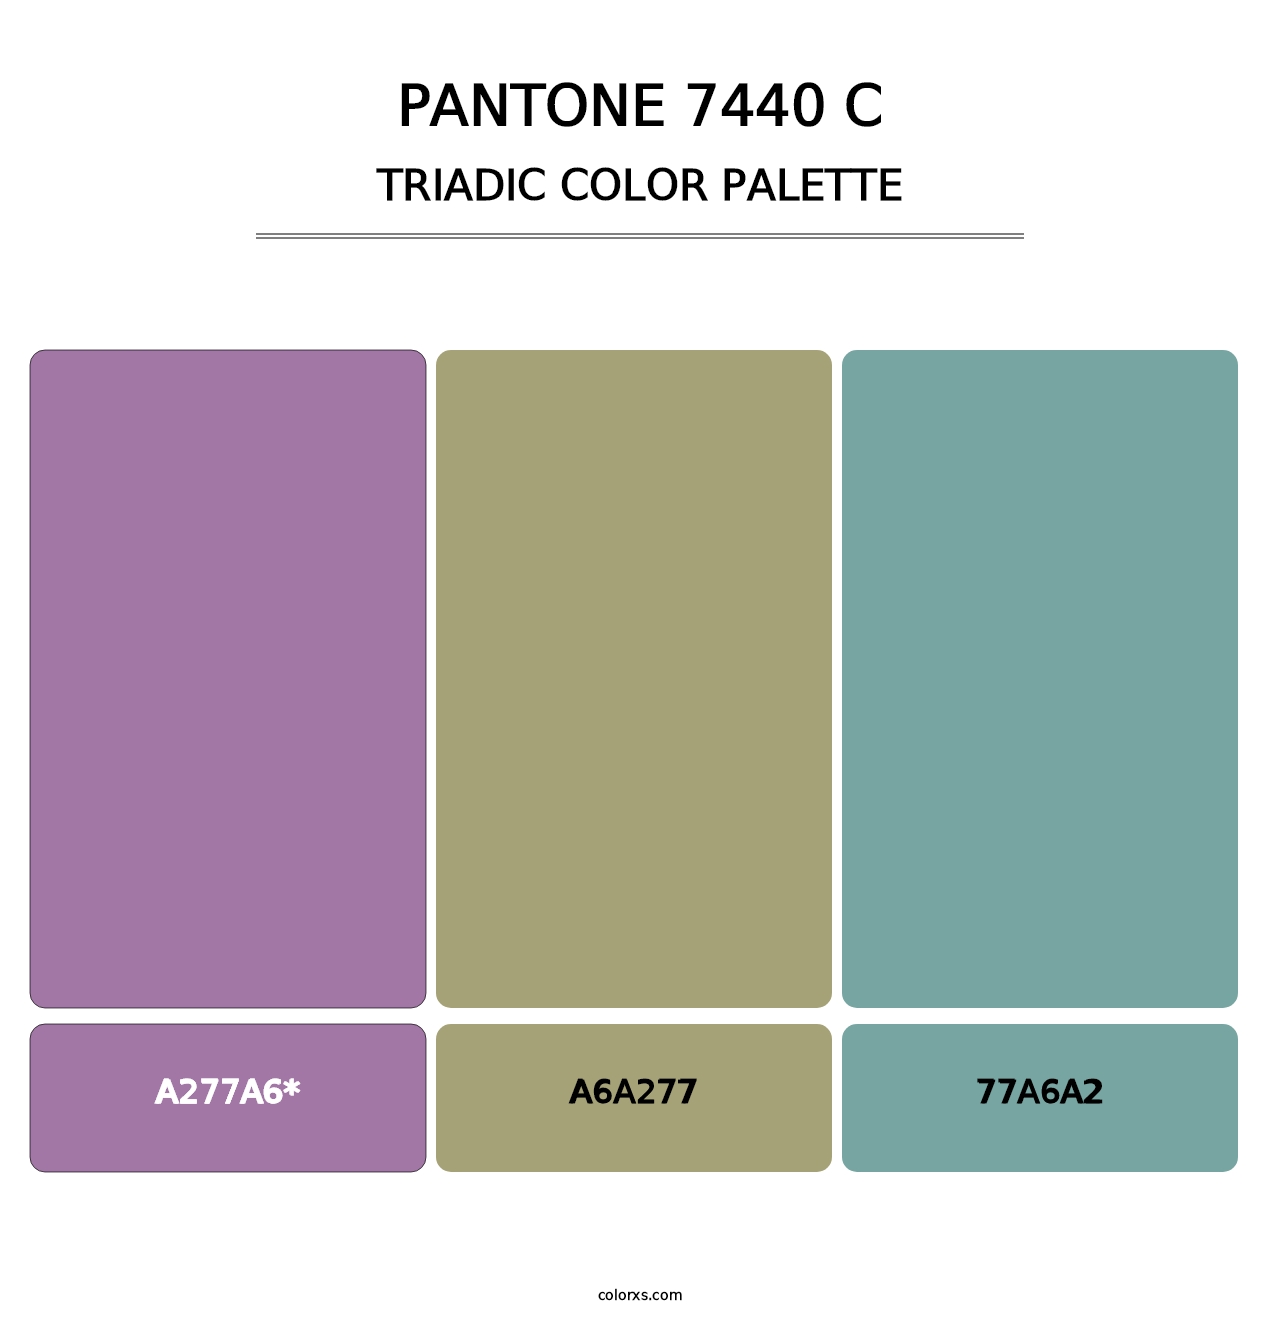 PANTONE 7440 C - Triadic Color Palette